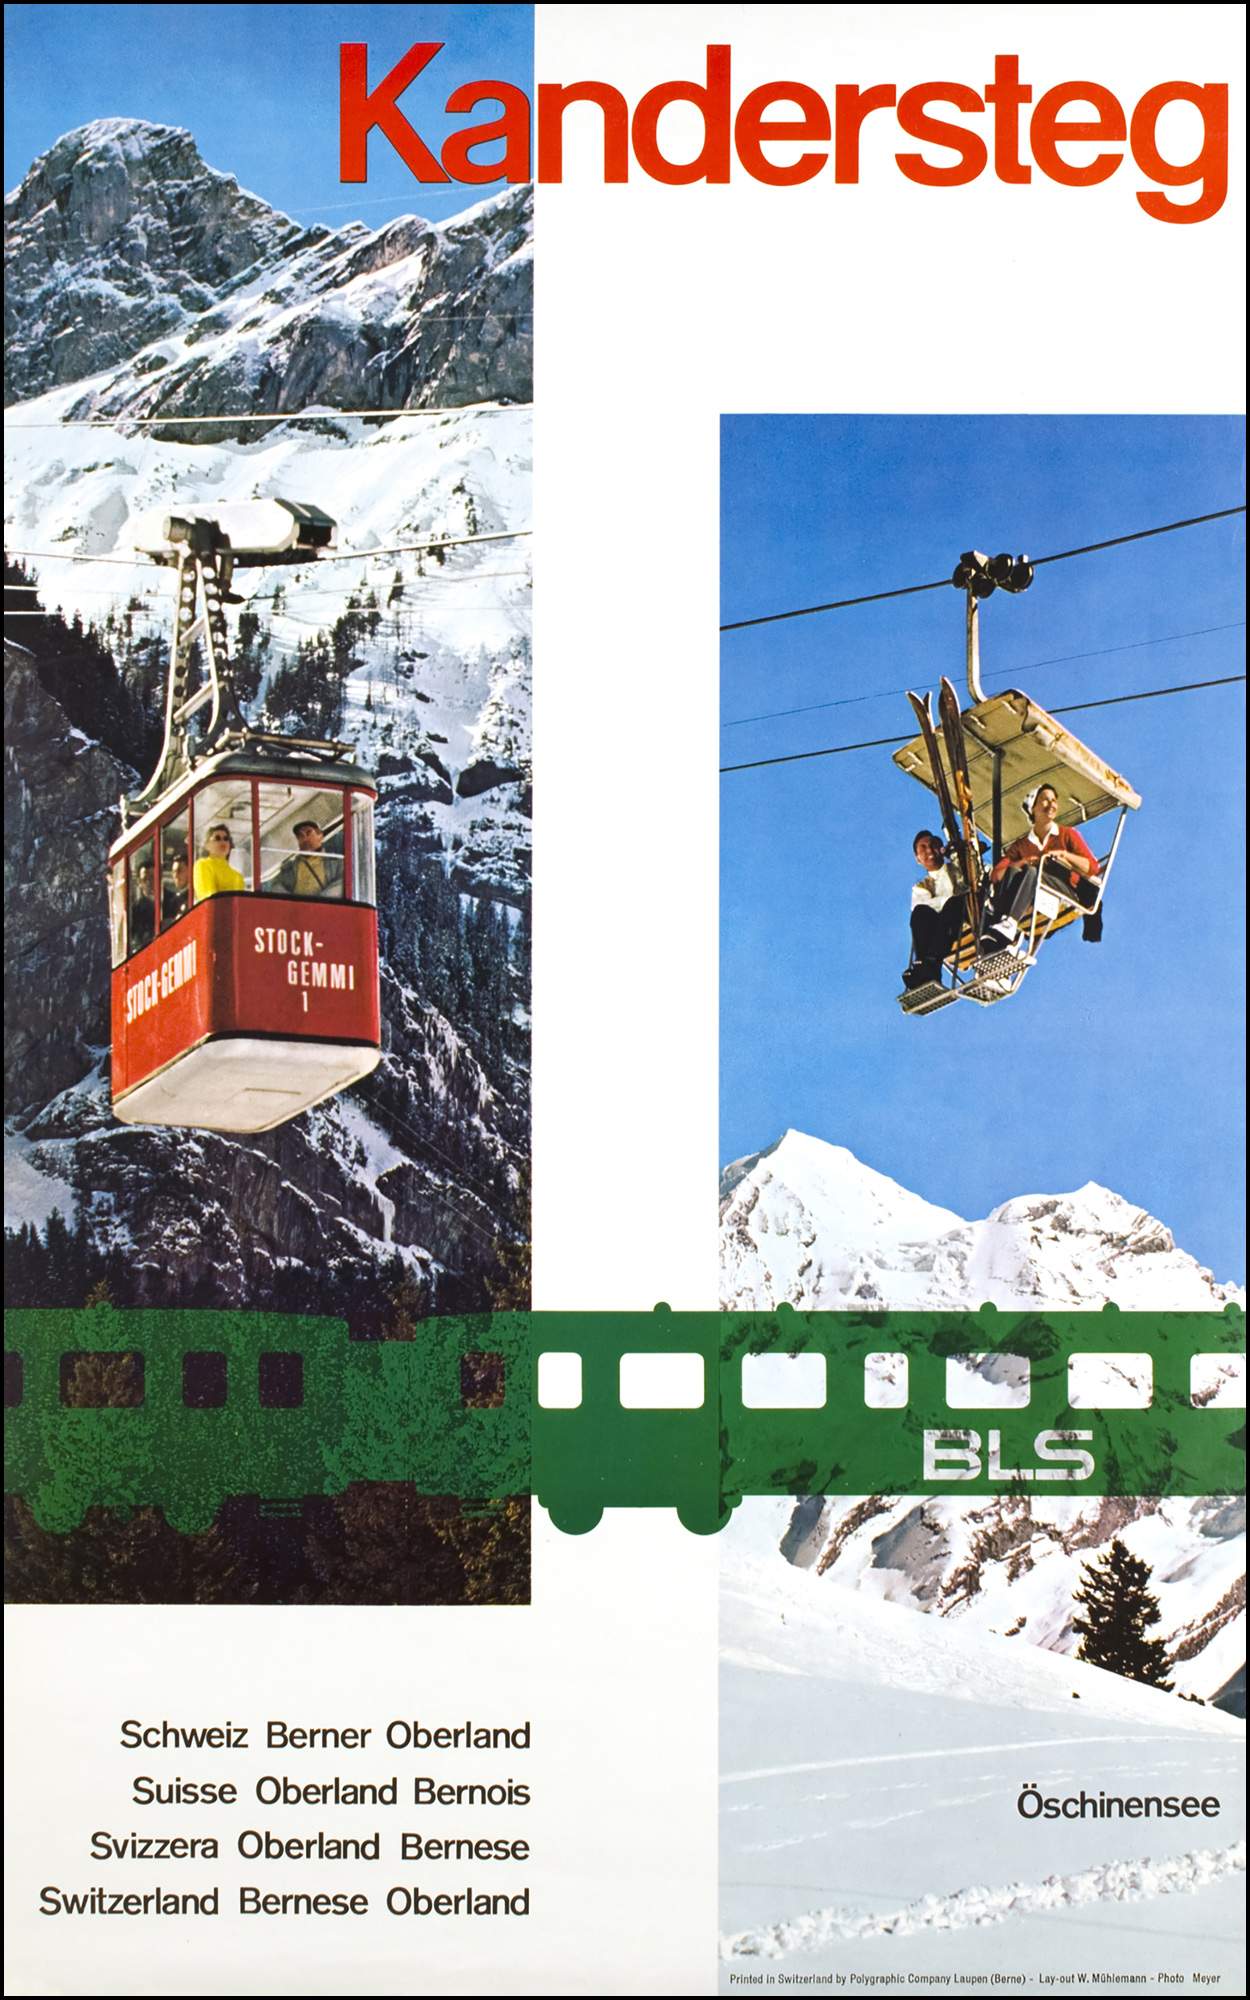 kandersteg-schweiz-berner-oberland-40113-kandersteg-vintage-poster_1.jpg